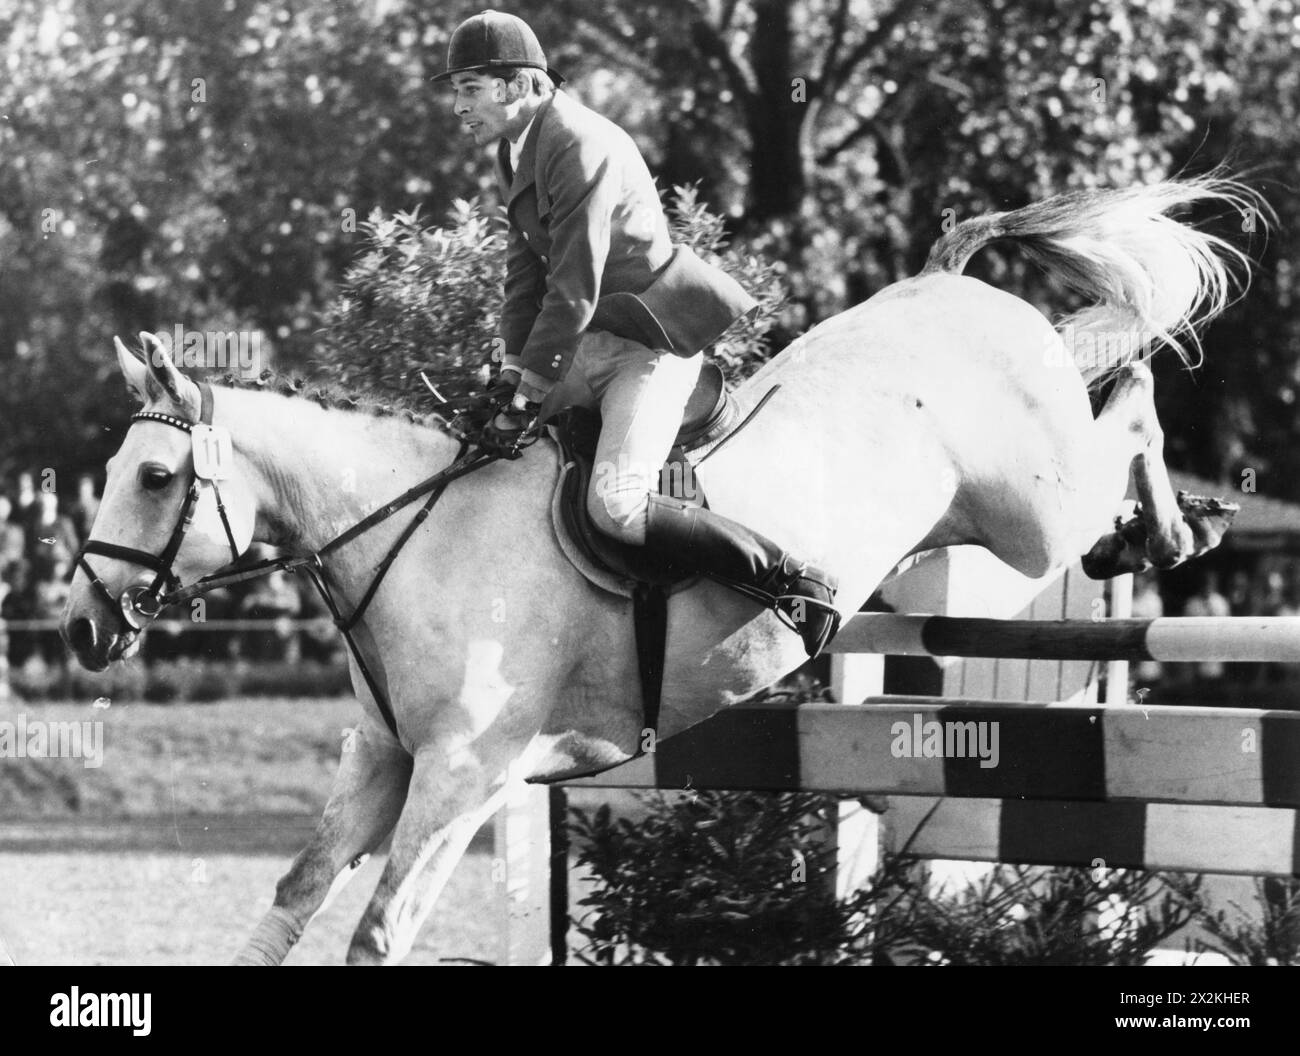 Schockemoehle, Paul, * 22.3,1945, deutscher Jump Jockey, auf Askan IV, während einer Reitveranstaltung, 1970er, ZUSÄTZLICHE RECHTE-CLEARANCE-INFO-NOT-AVAILABLE Stockfoto